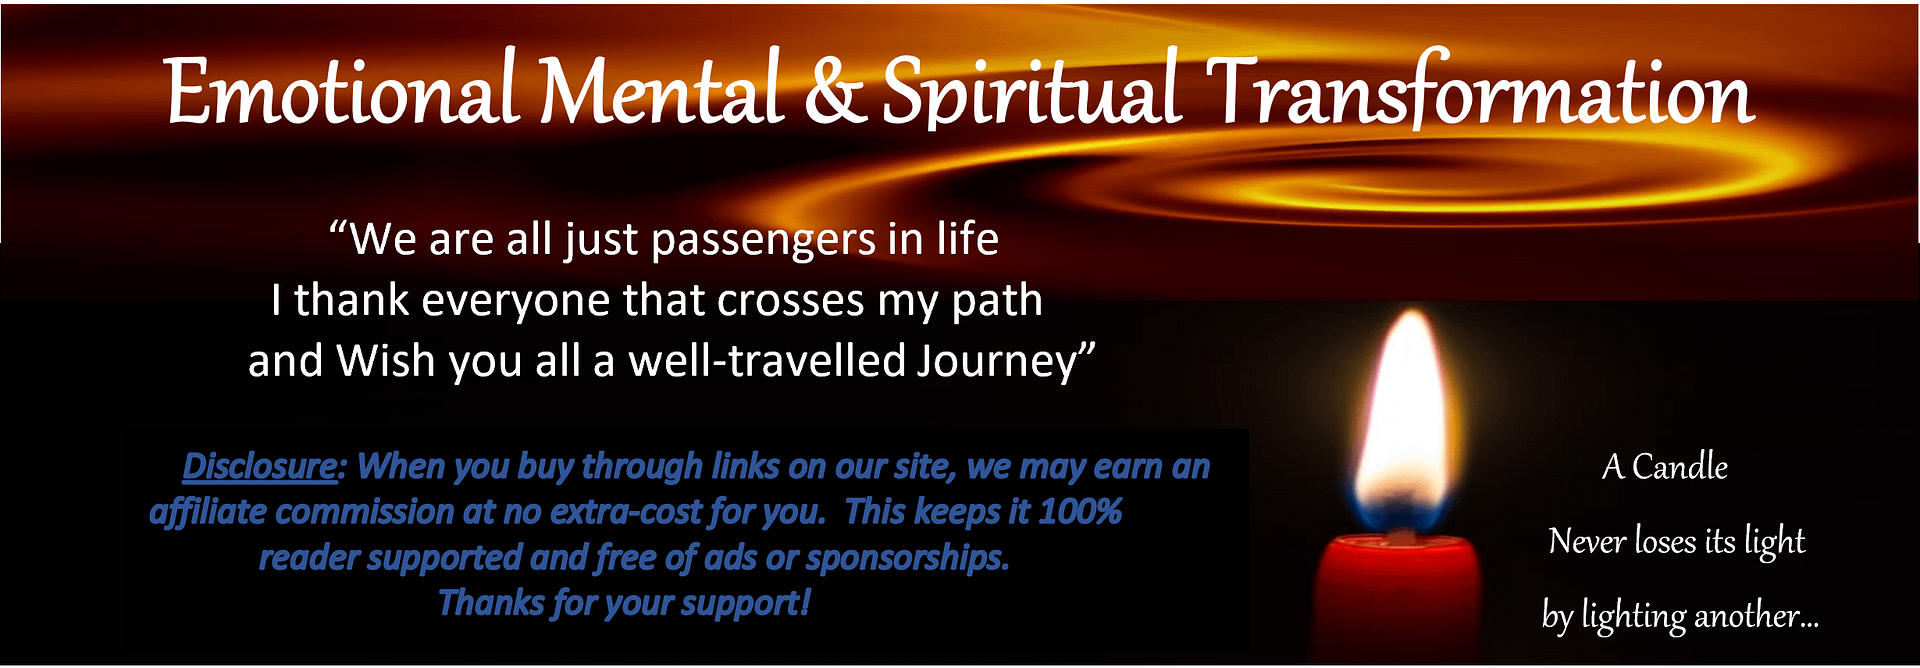 Emotional Mental & Spiritual Transformation